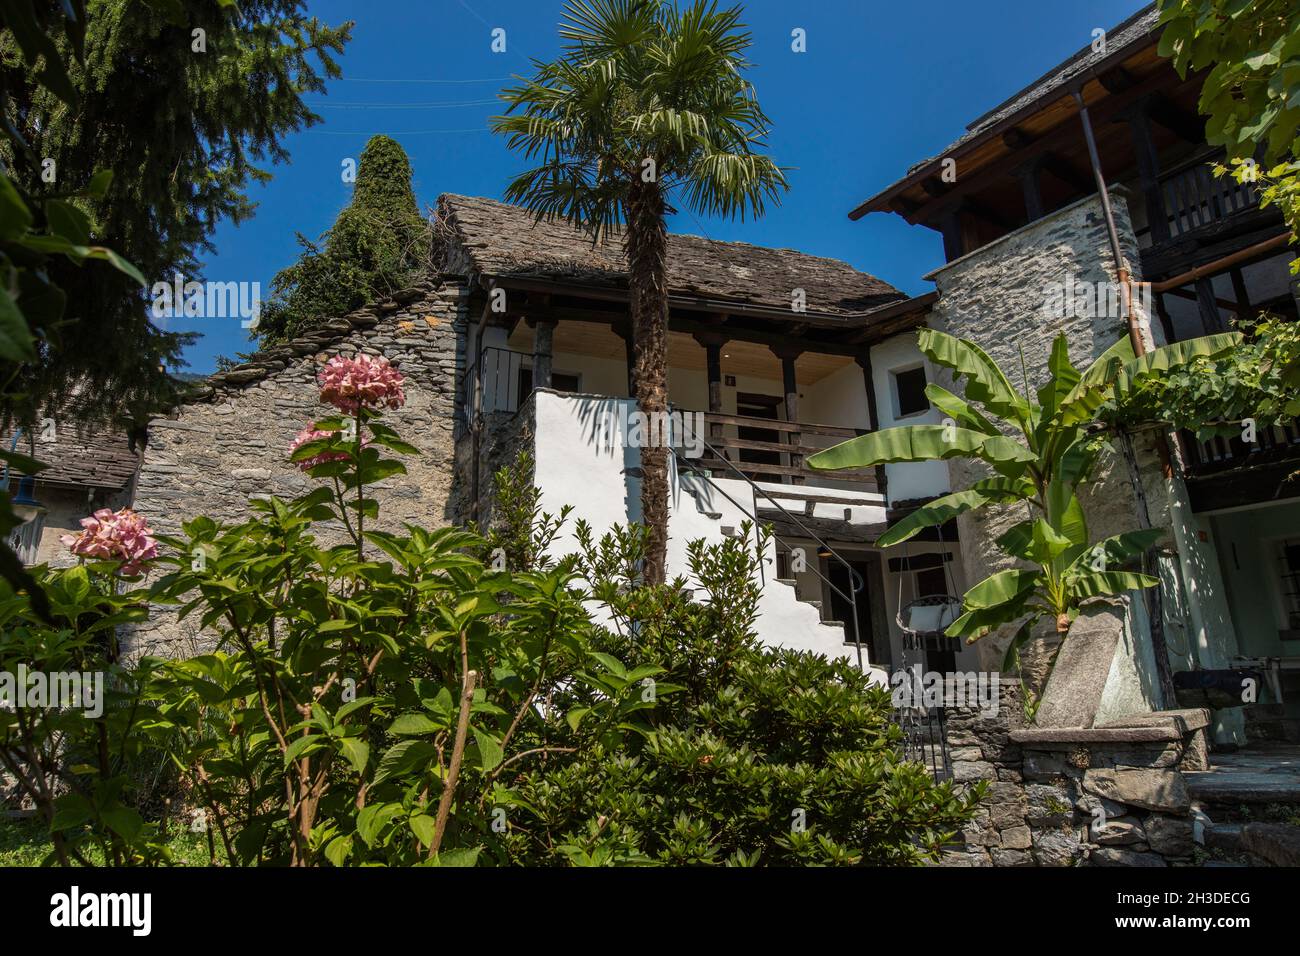 Außenansicht eines typischen Tessiner Hauses, in der Schweiz, im Kuleo des Dorfes Avegno. Es ist Sommer und es gibt eine gewisse Ruhe der Surr Stockfoto